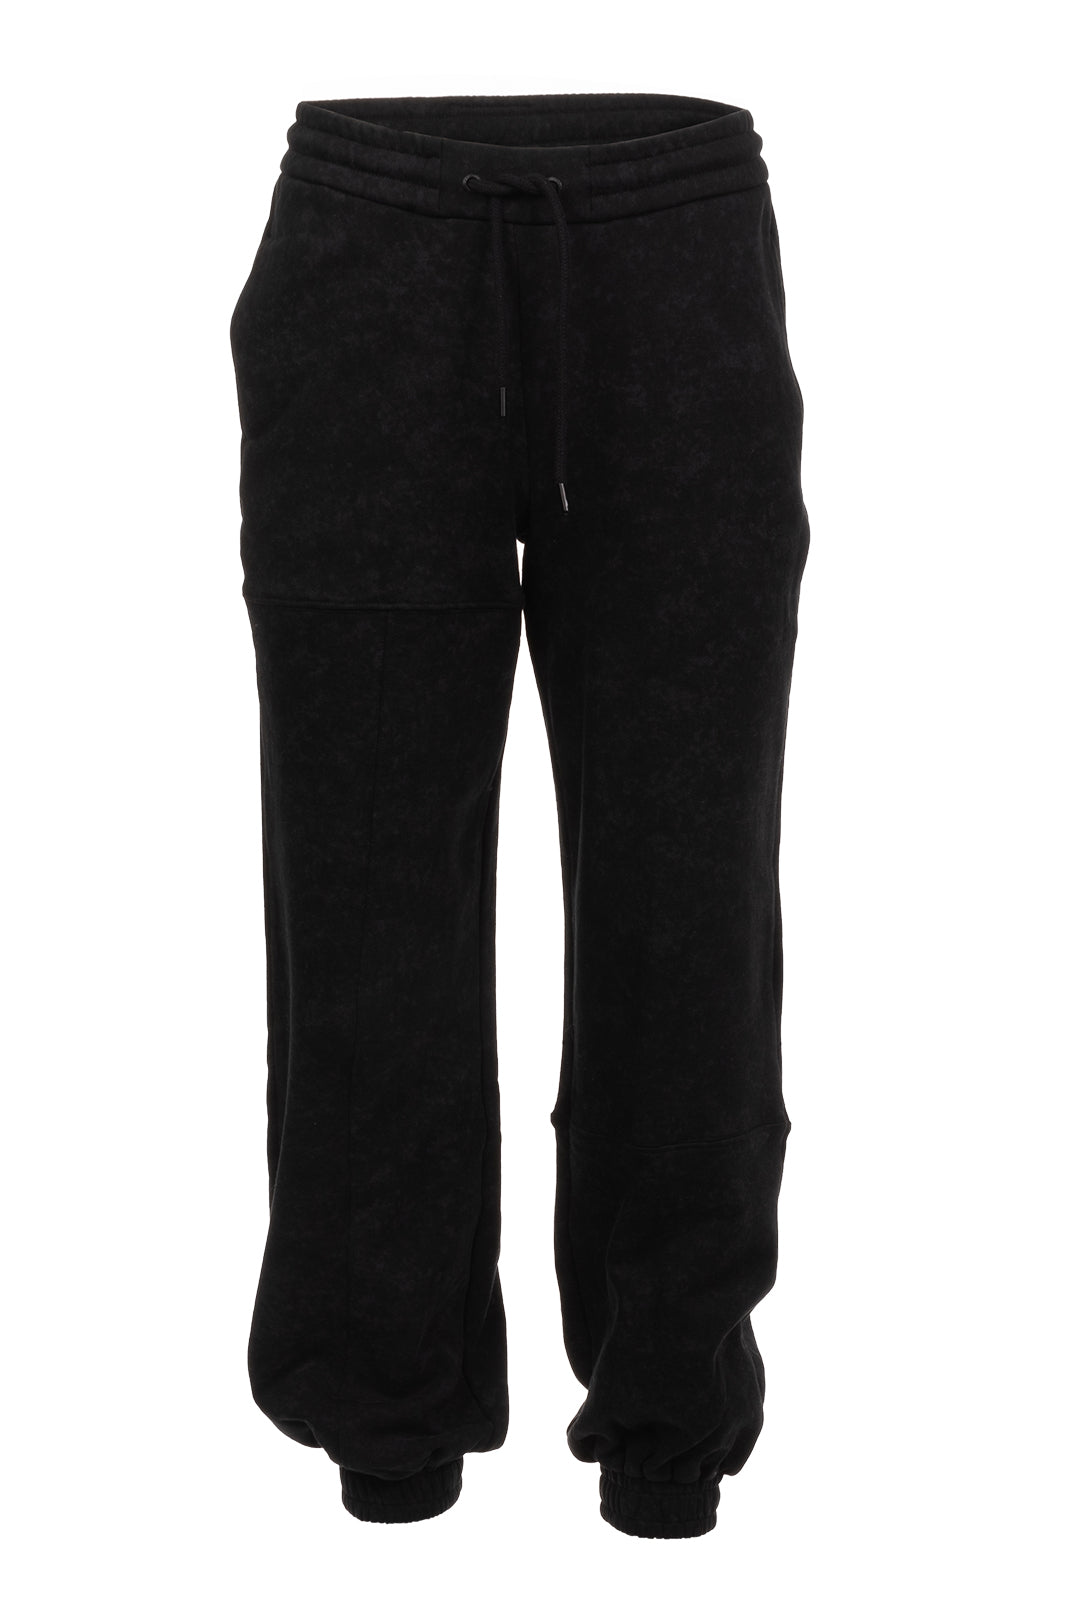 Pantalon noir effet délavé découpes asymétriques | Dualey